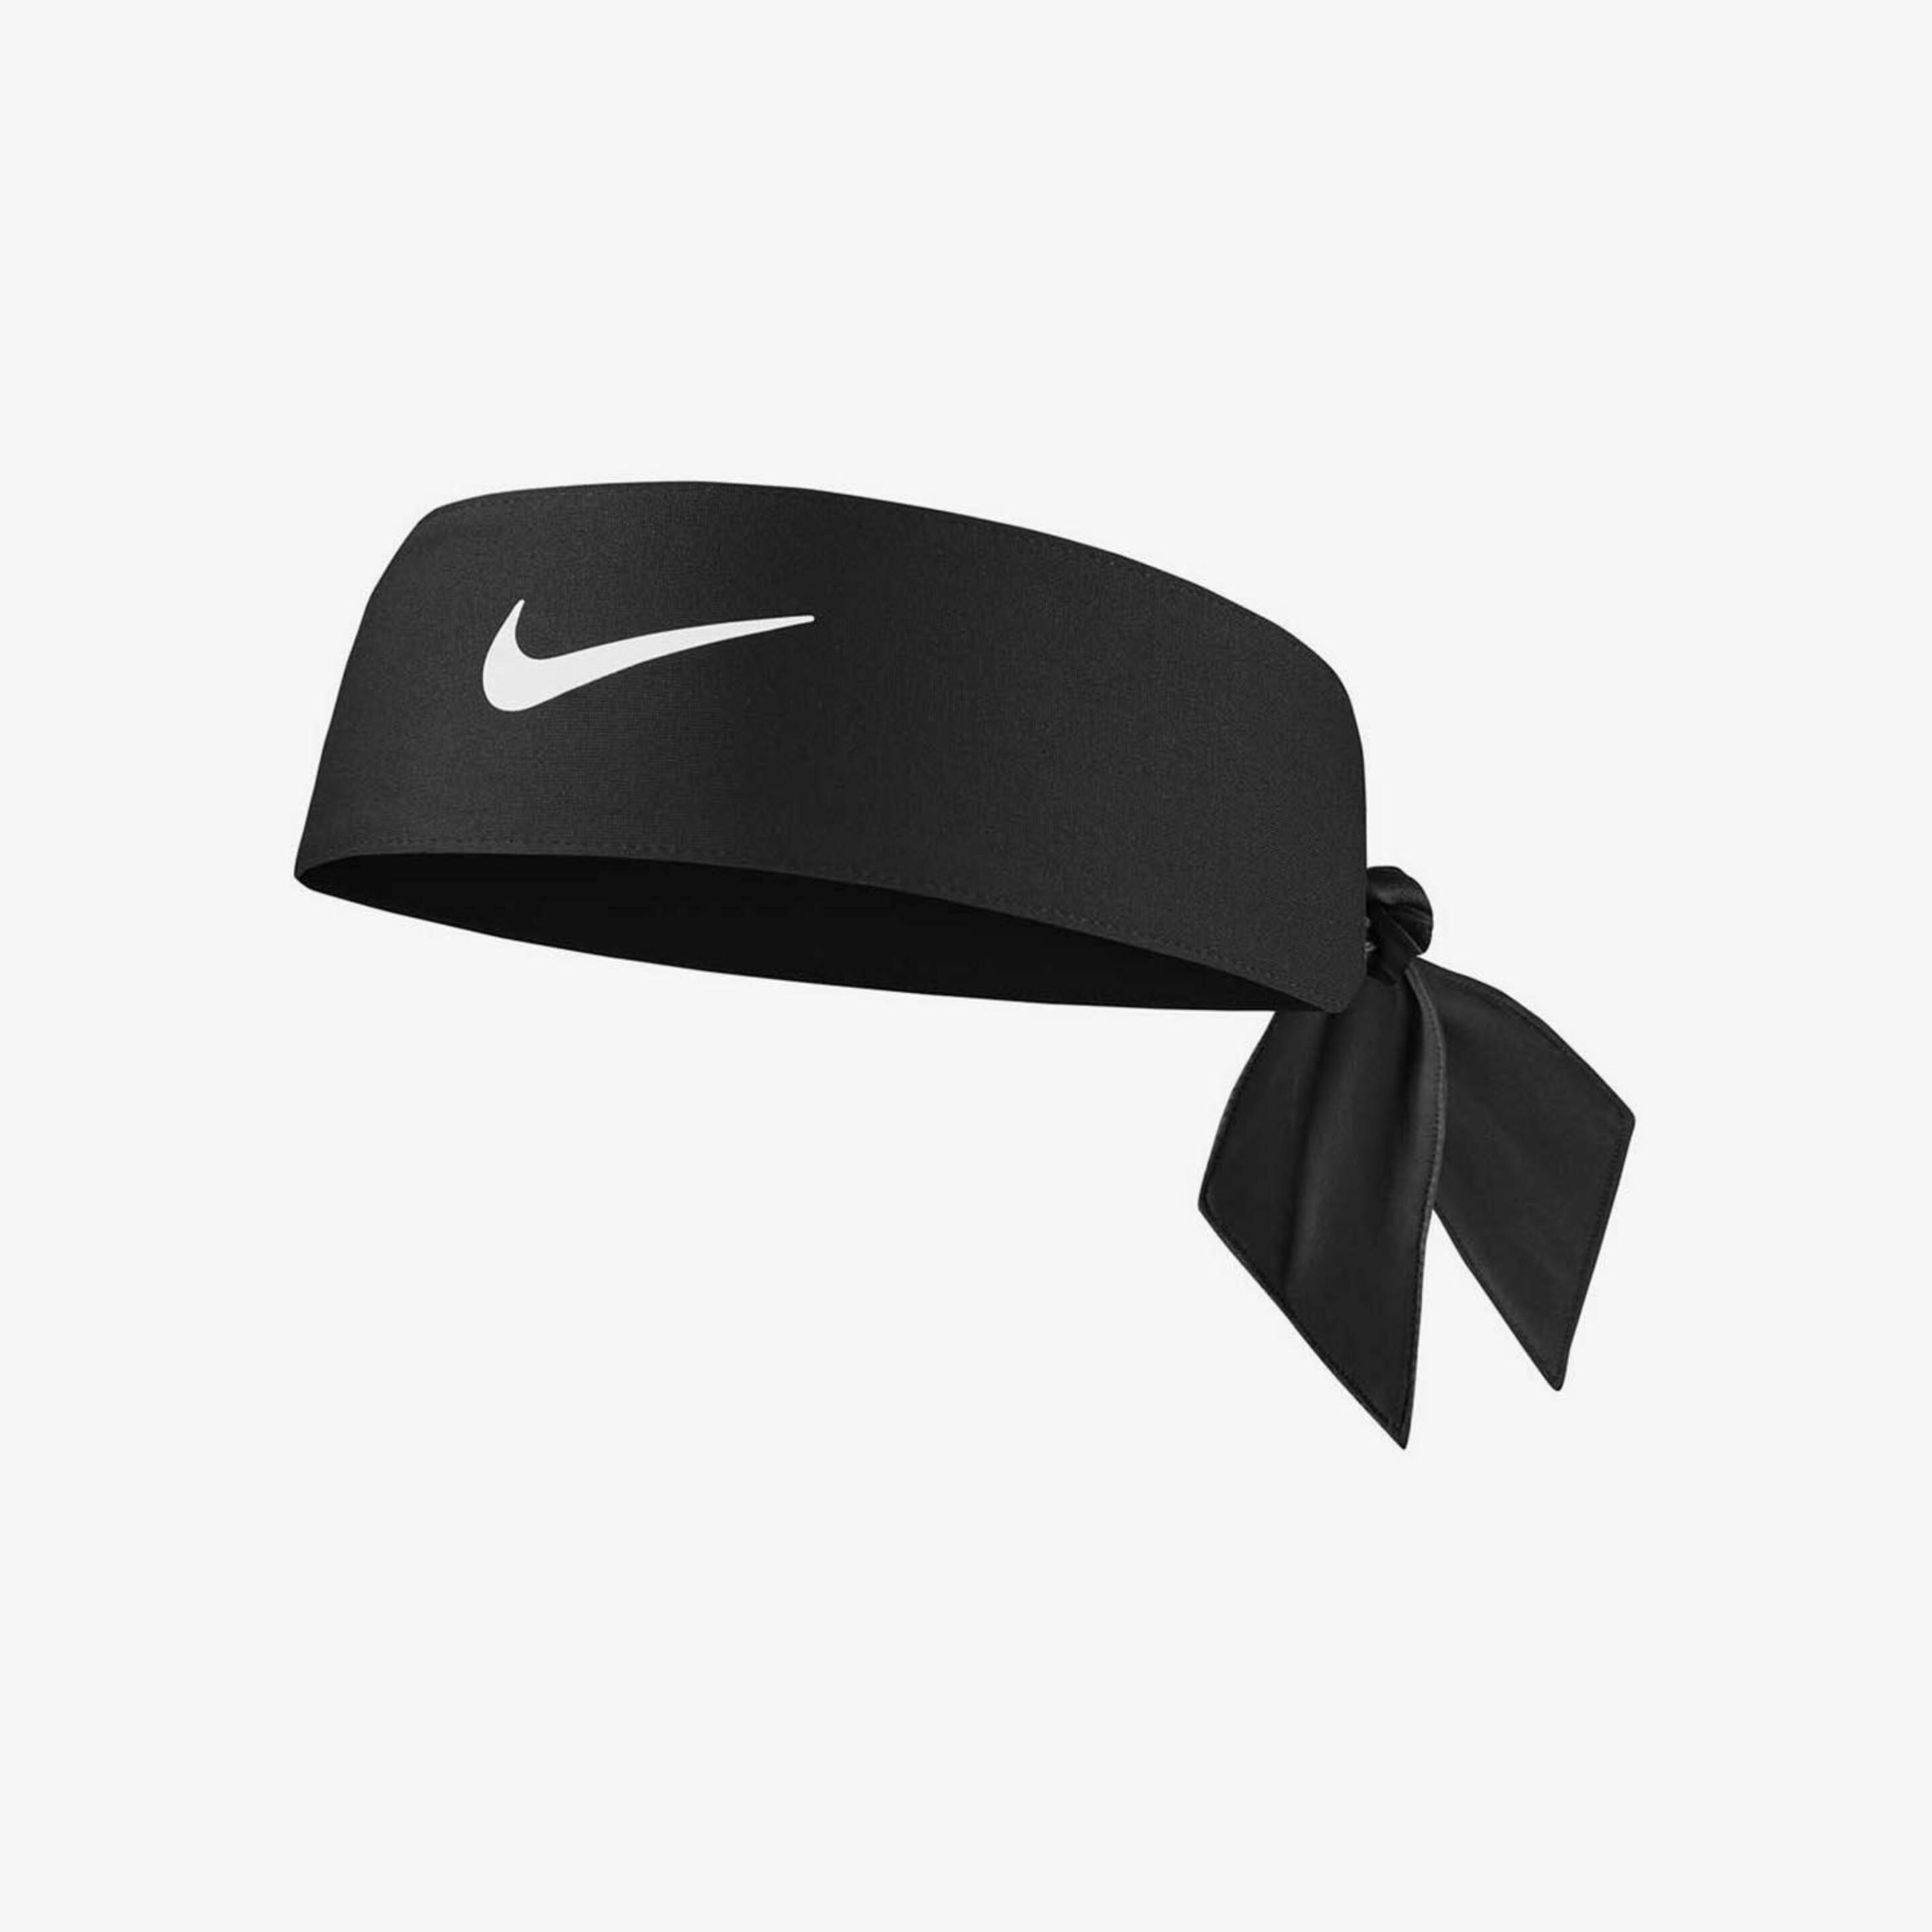 Nike Dri-fit Tie 4.0